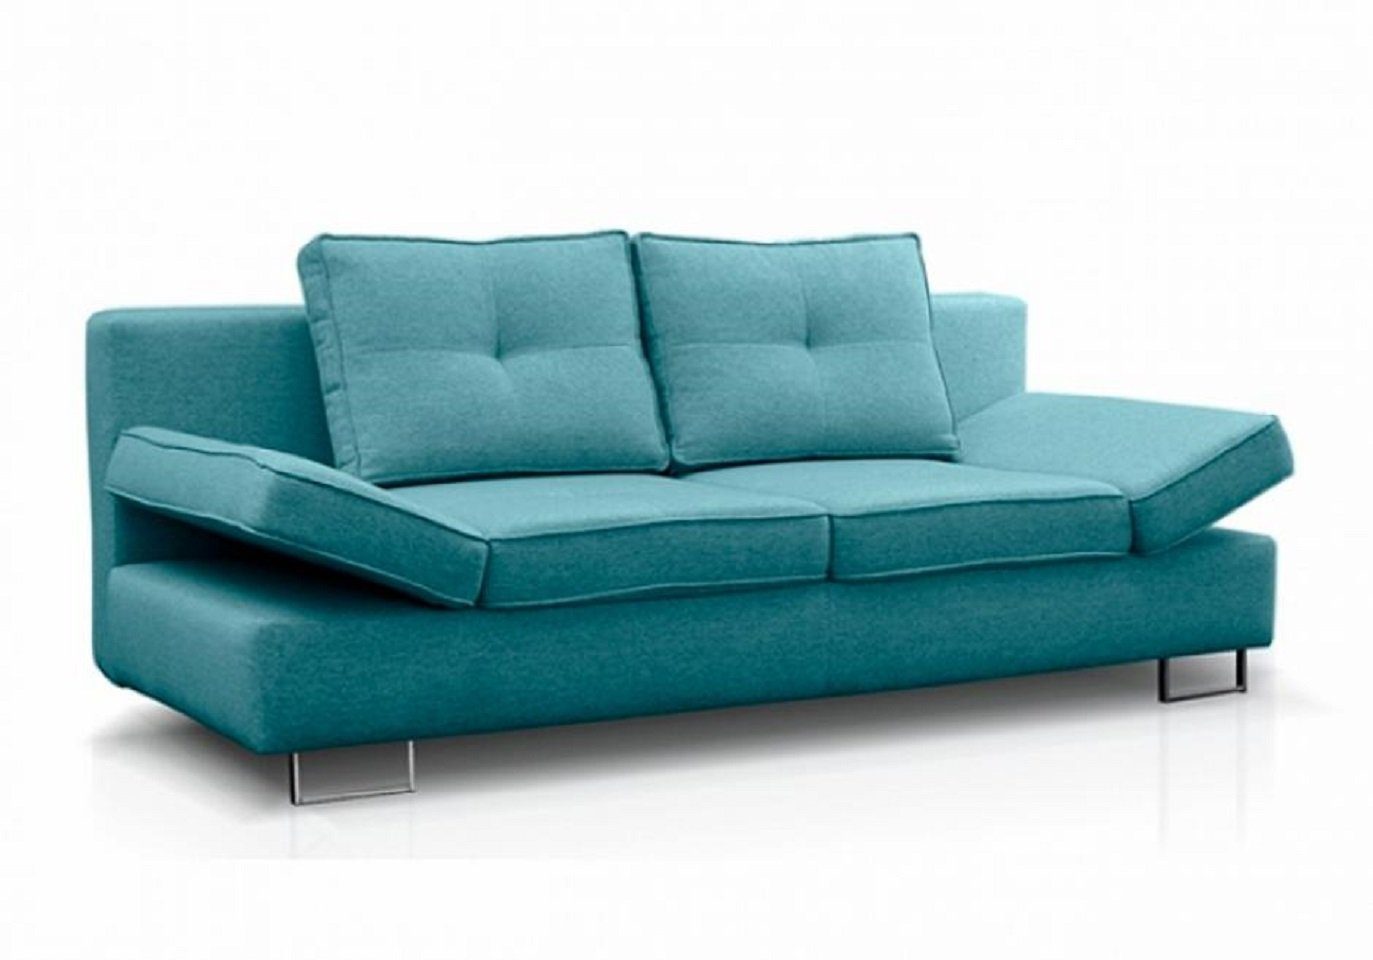 JVmoebel 2-Sitzer Zweisitzer Modern Sofa 2 Sitzer Couch Polstersofa Möbel, 1 Teile, Made in Europe Blau